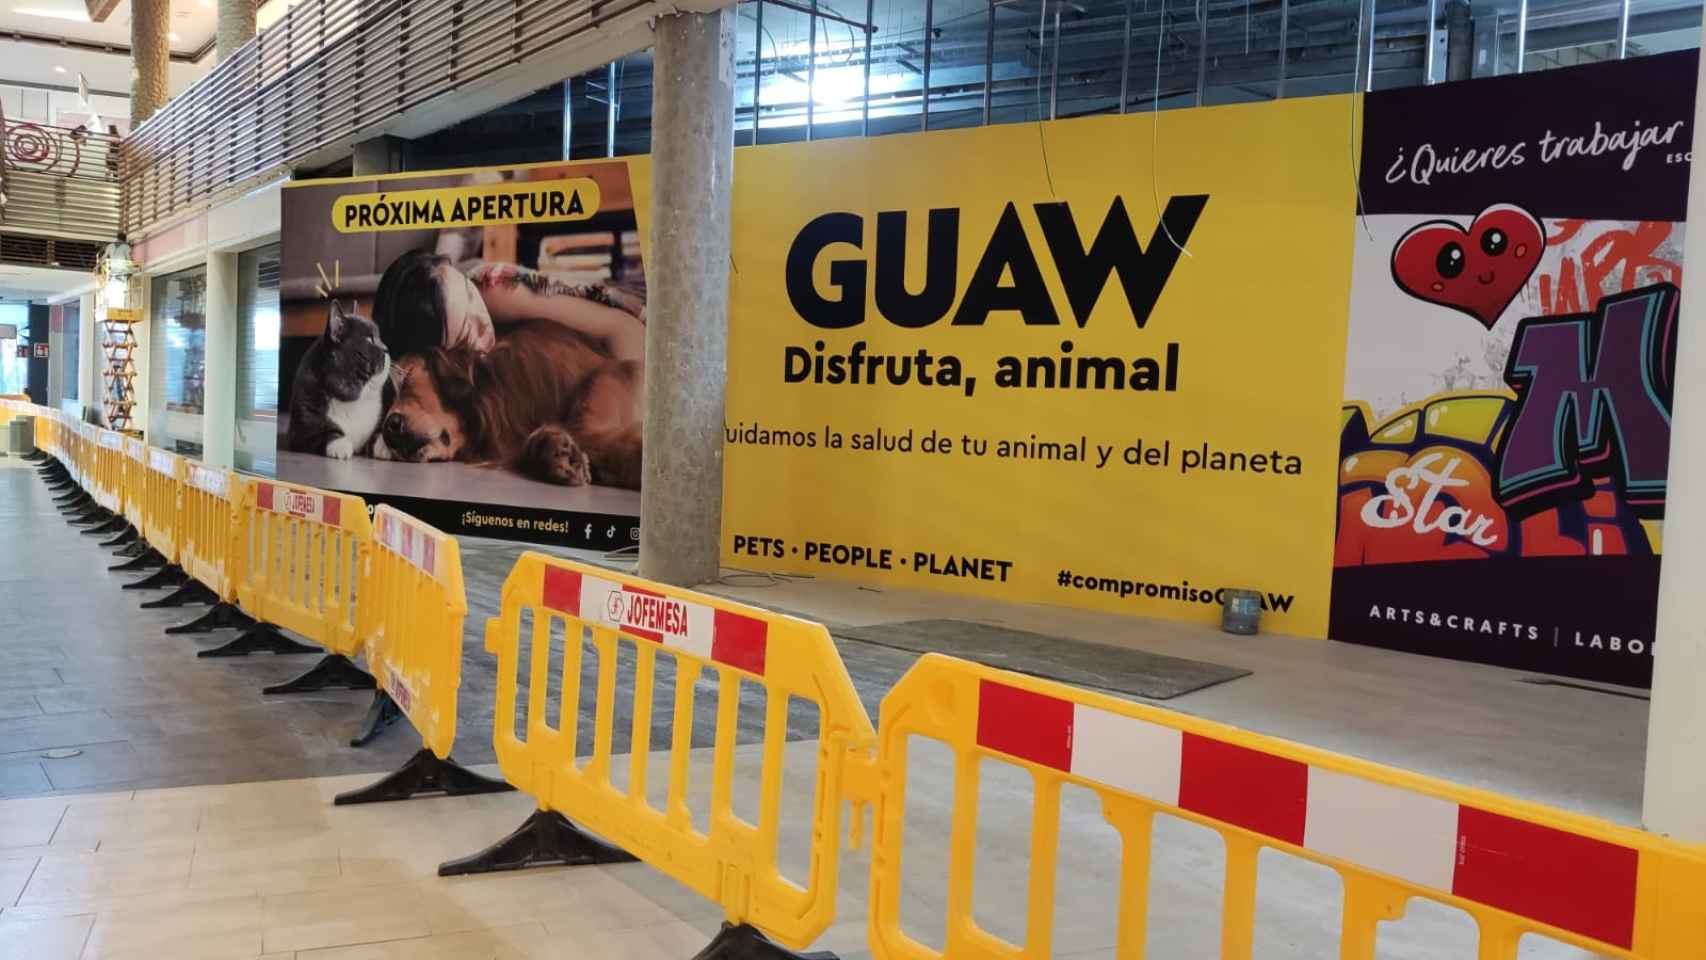 Anuncio de la apertura de 'Guaw' en Luz del Tajo de Toledo.